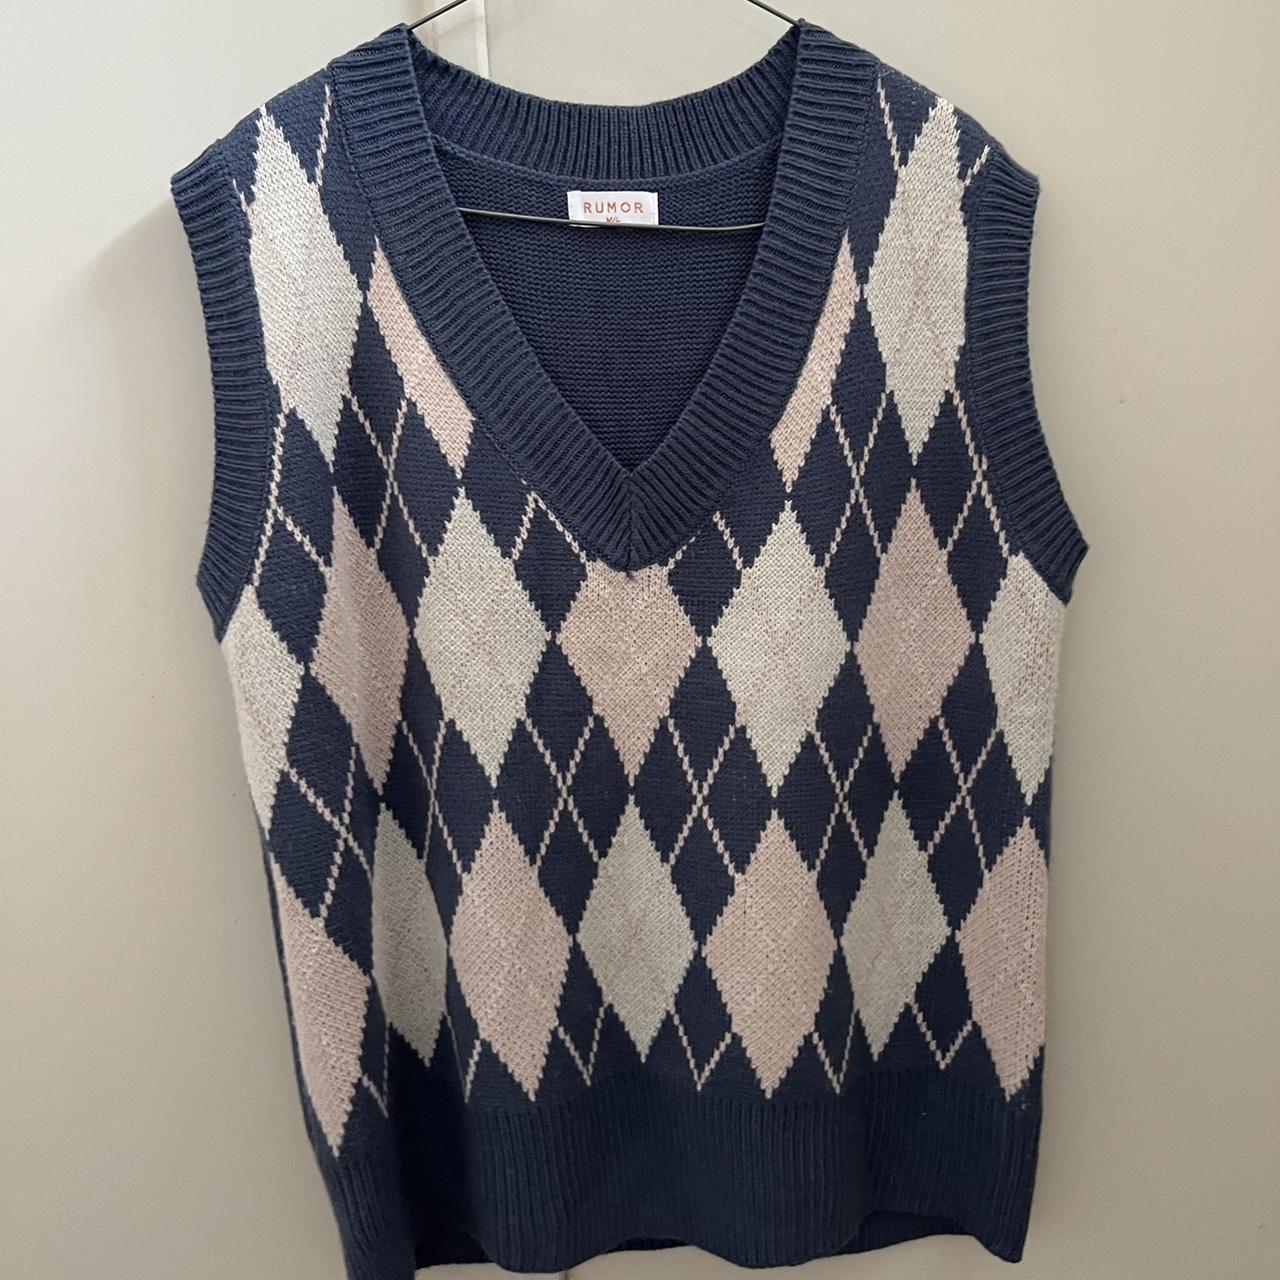 Vintage sweater vest Size: Medium/Large Worn once... - Depop